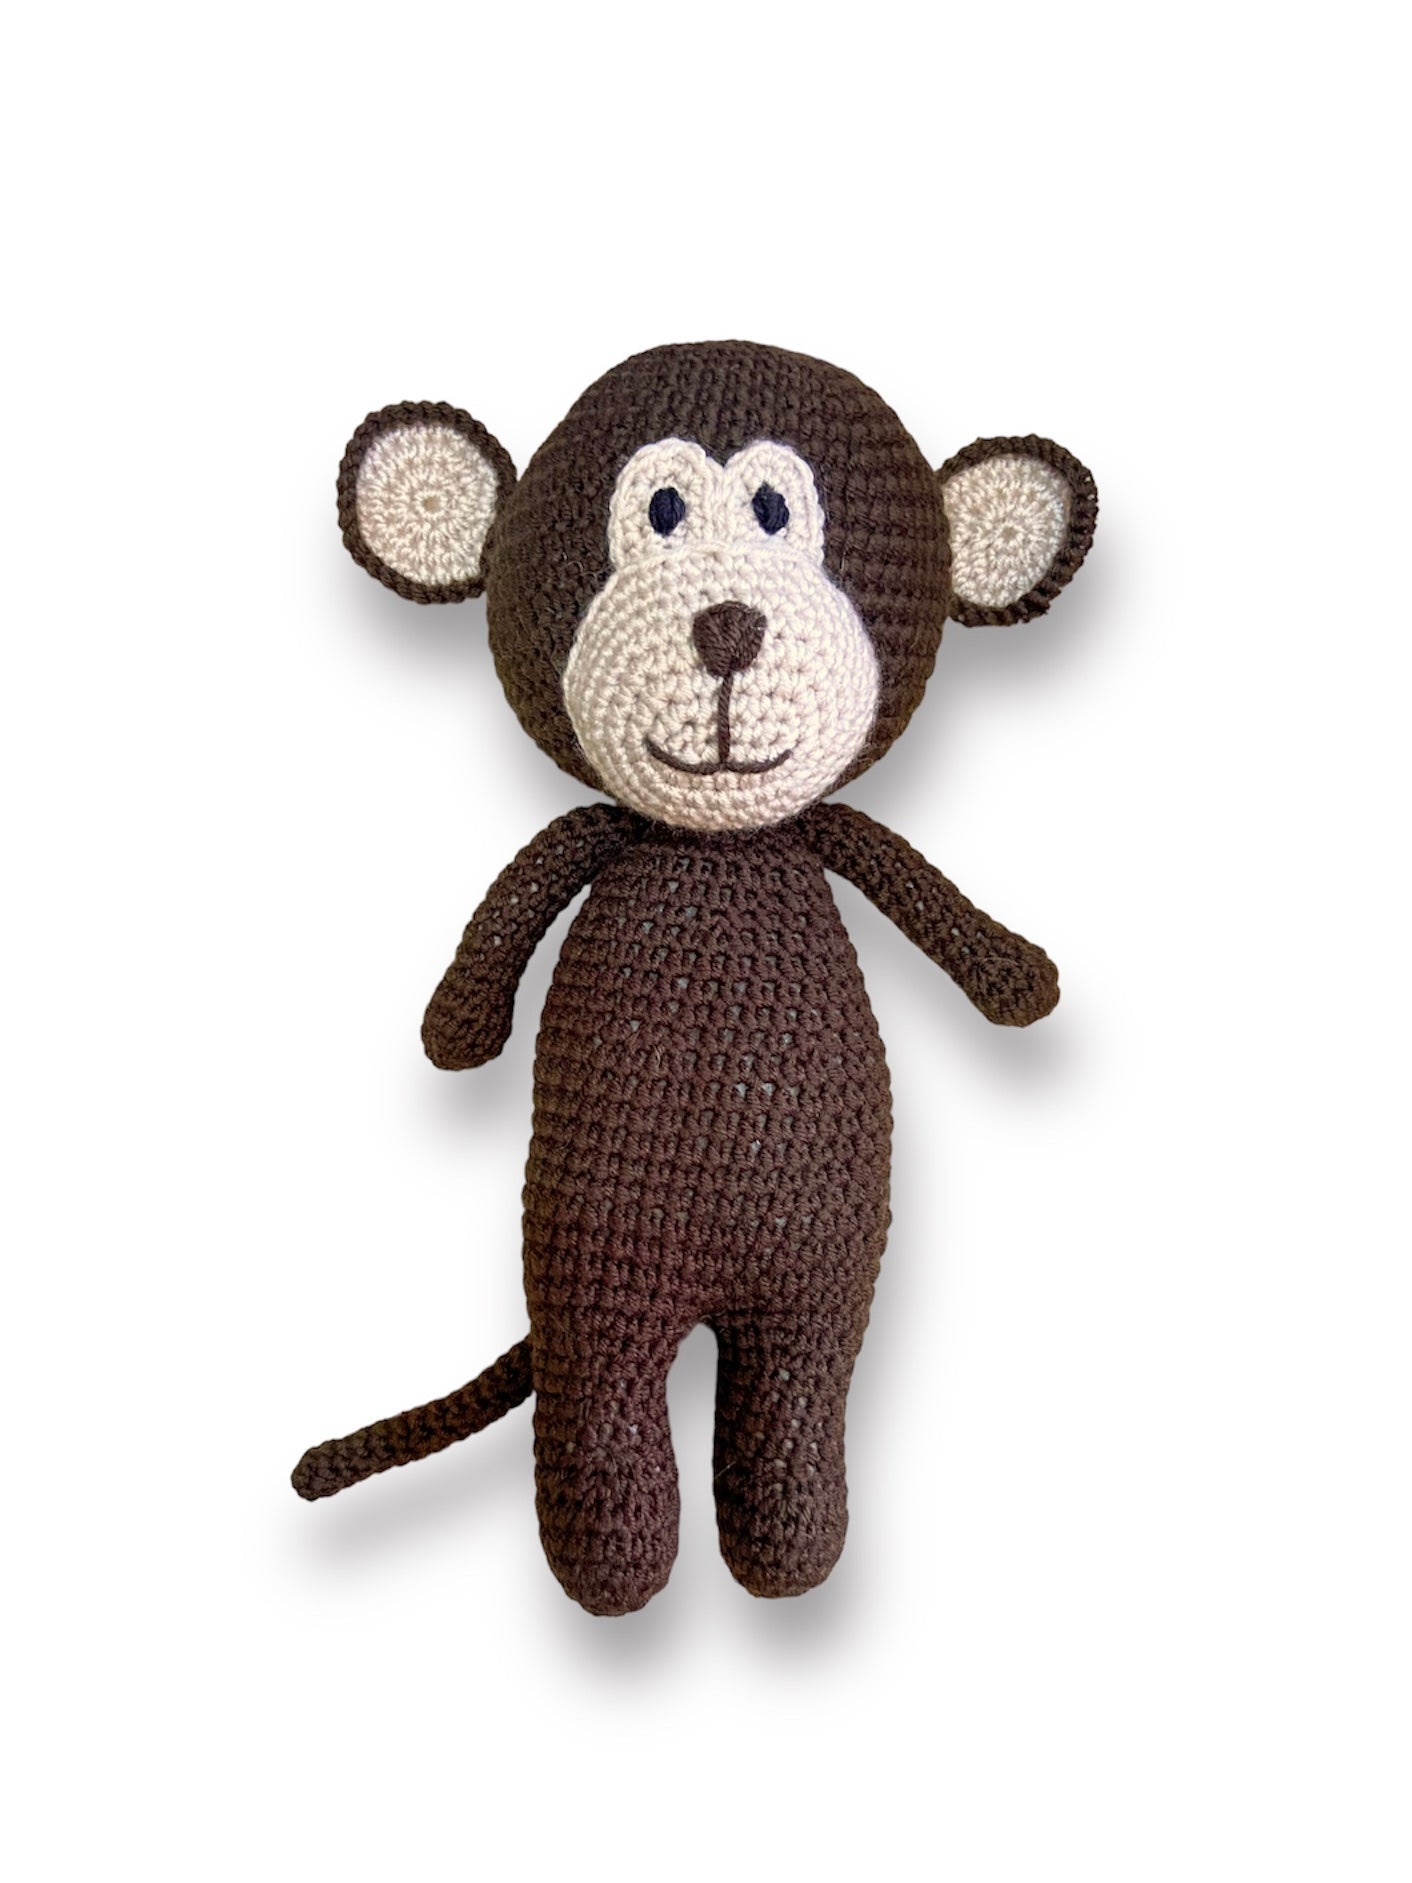 Monkey Toy (No Name)